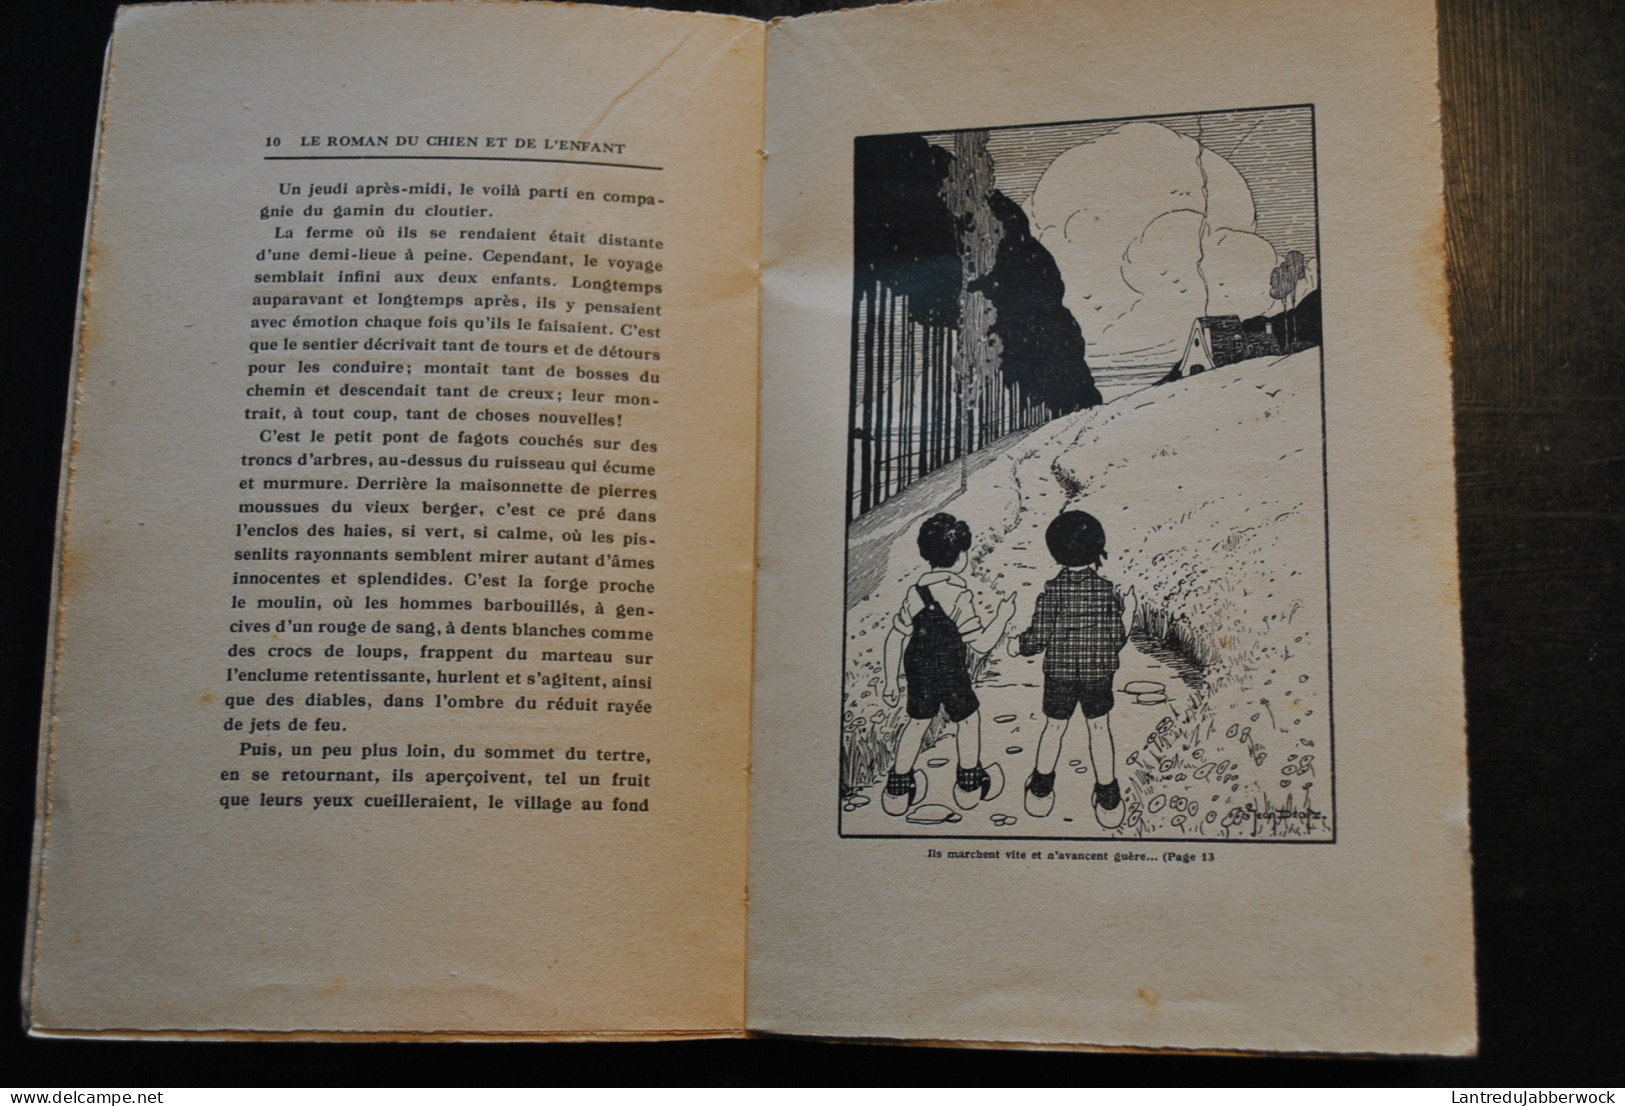 Louis Delattre LE ROMAN DU CHIEN ET DE L'ENFANT Illustrations Jean Dratz - Office De Publicité 1933 Littérature Belge - Belgian Authors